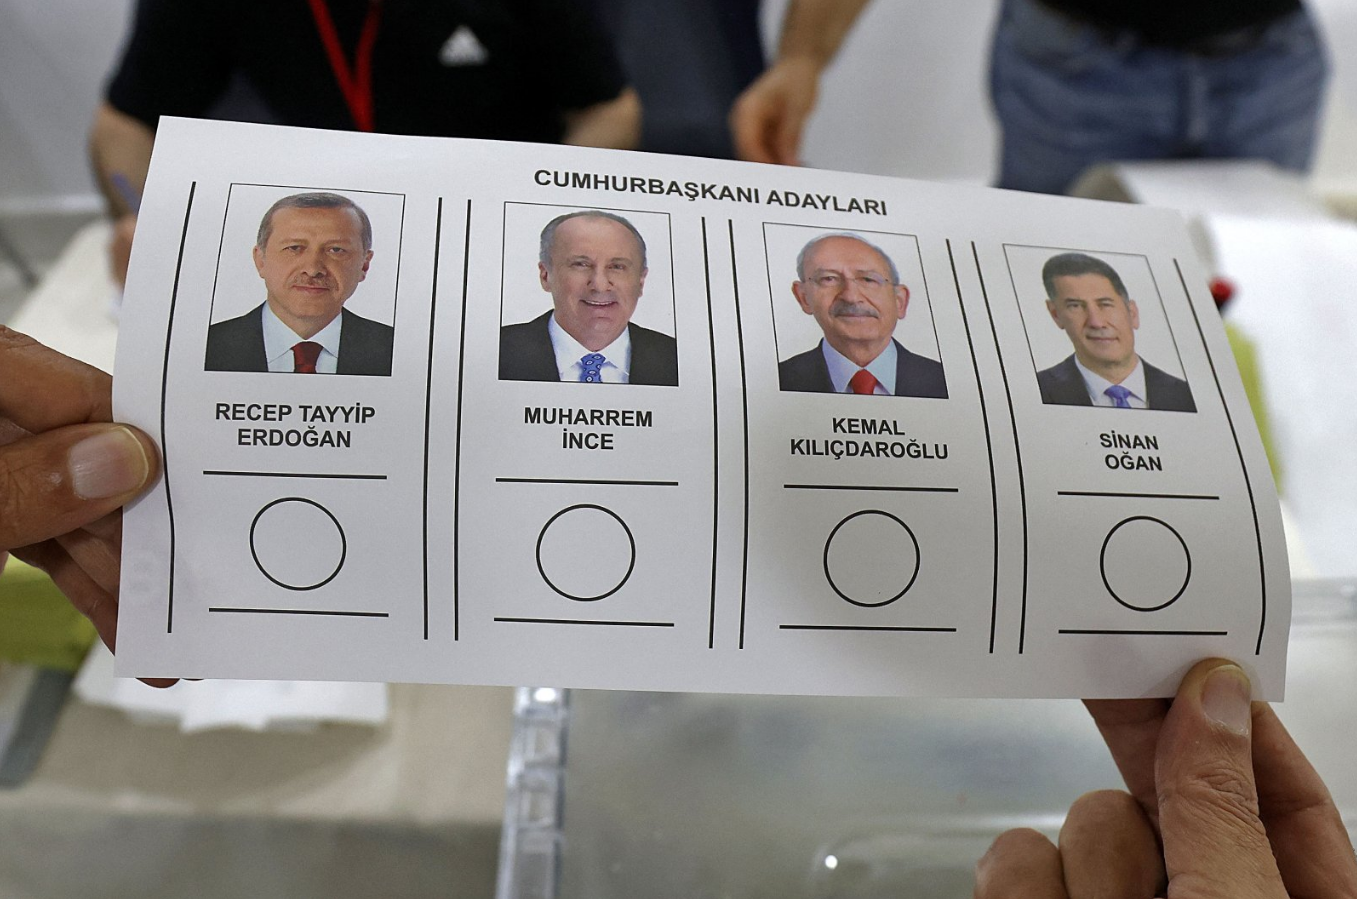 Thế giới - Hàng triệu cử tri Thổ Nhĩ Kỳ đi bỏ phiếu bầu Tổng thống cho 5 năm tới (Hình 3).